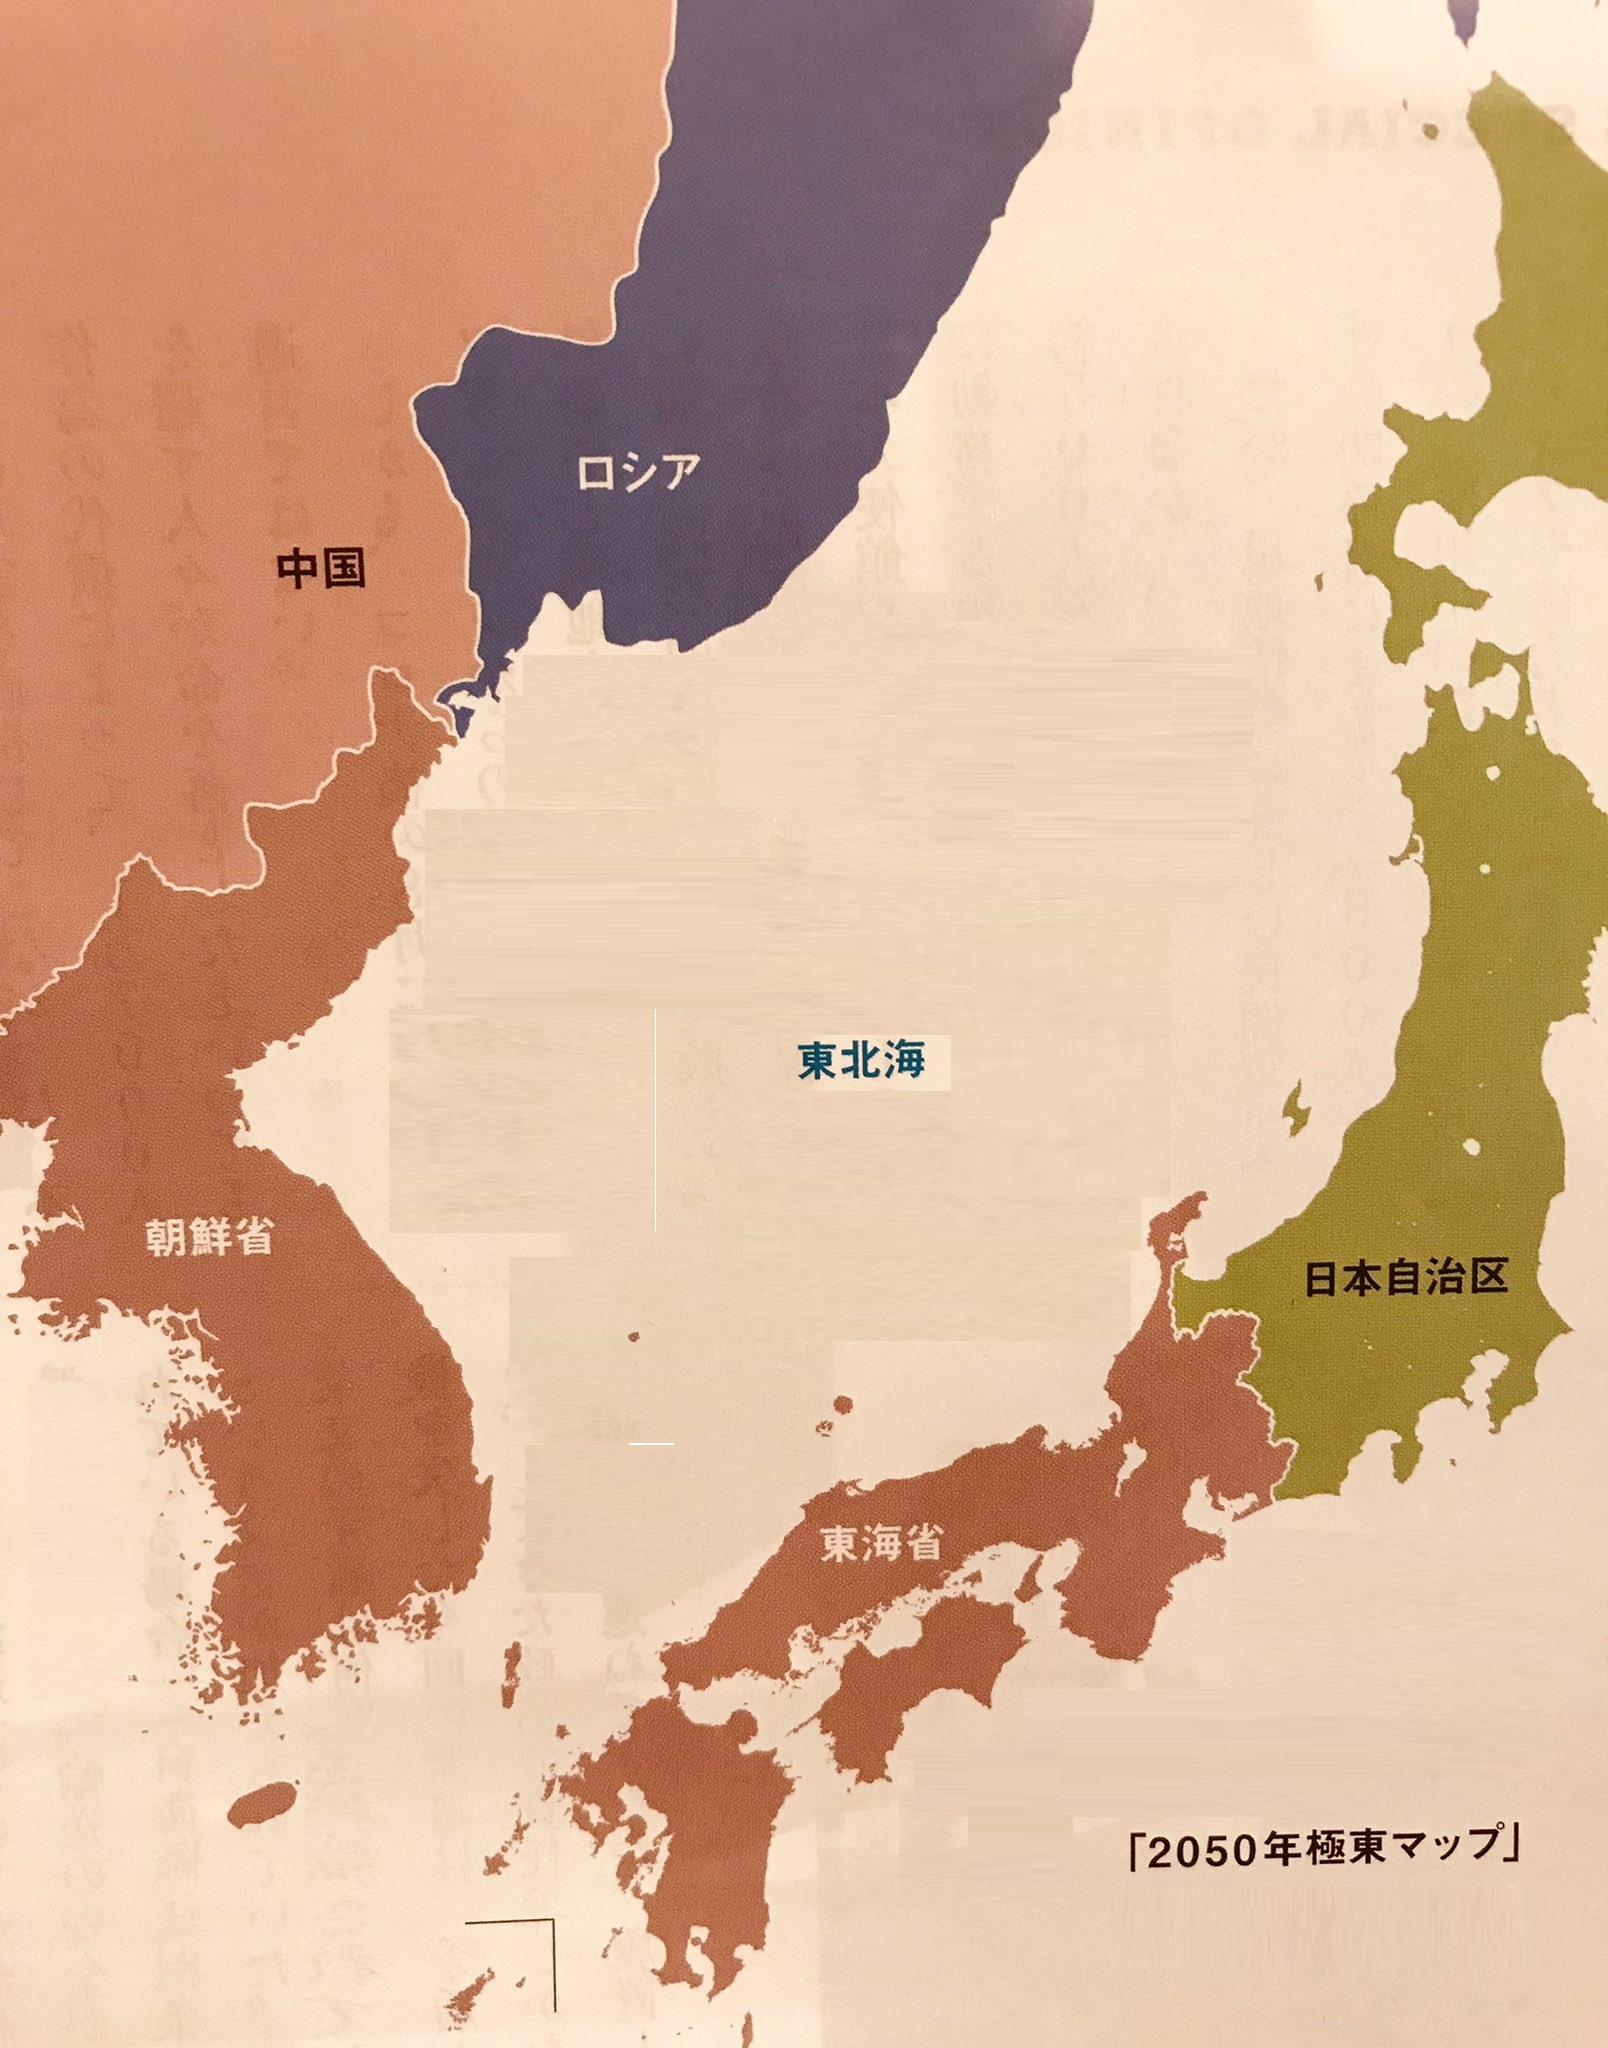 しゅりちゃん 怖いわぁ 05年に北京市内の政府系研究機関に遭った50年の地図 中国共産党は日本侵略をマジに考えてる 関西圏の私はイー ケイレンとかチョウ ネンテンとかに名前を変えさせられてまうわ 日本共産党も同じことを考える国賊政党です